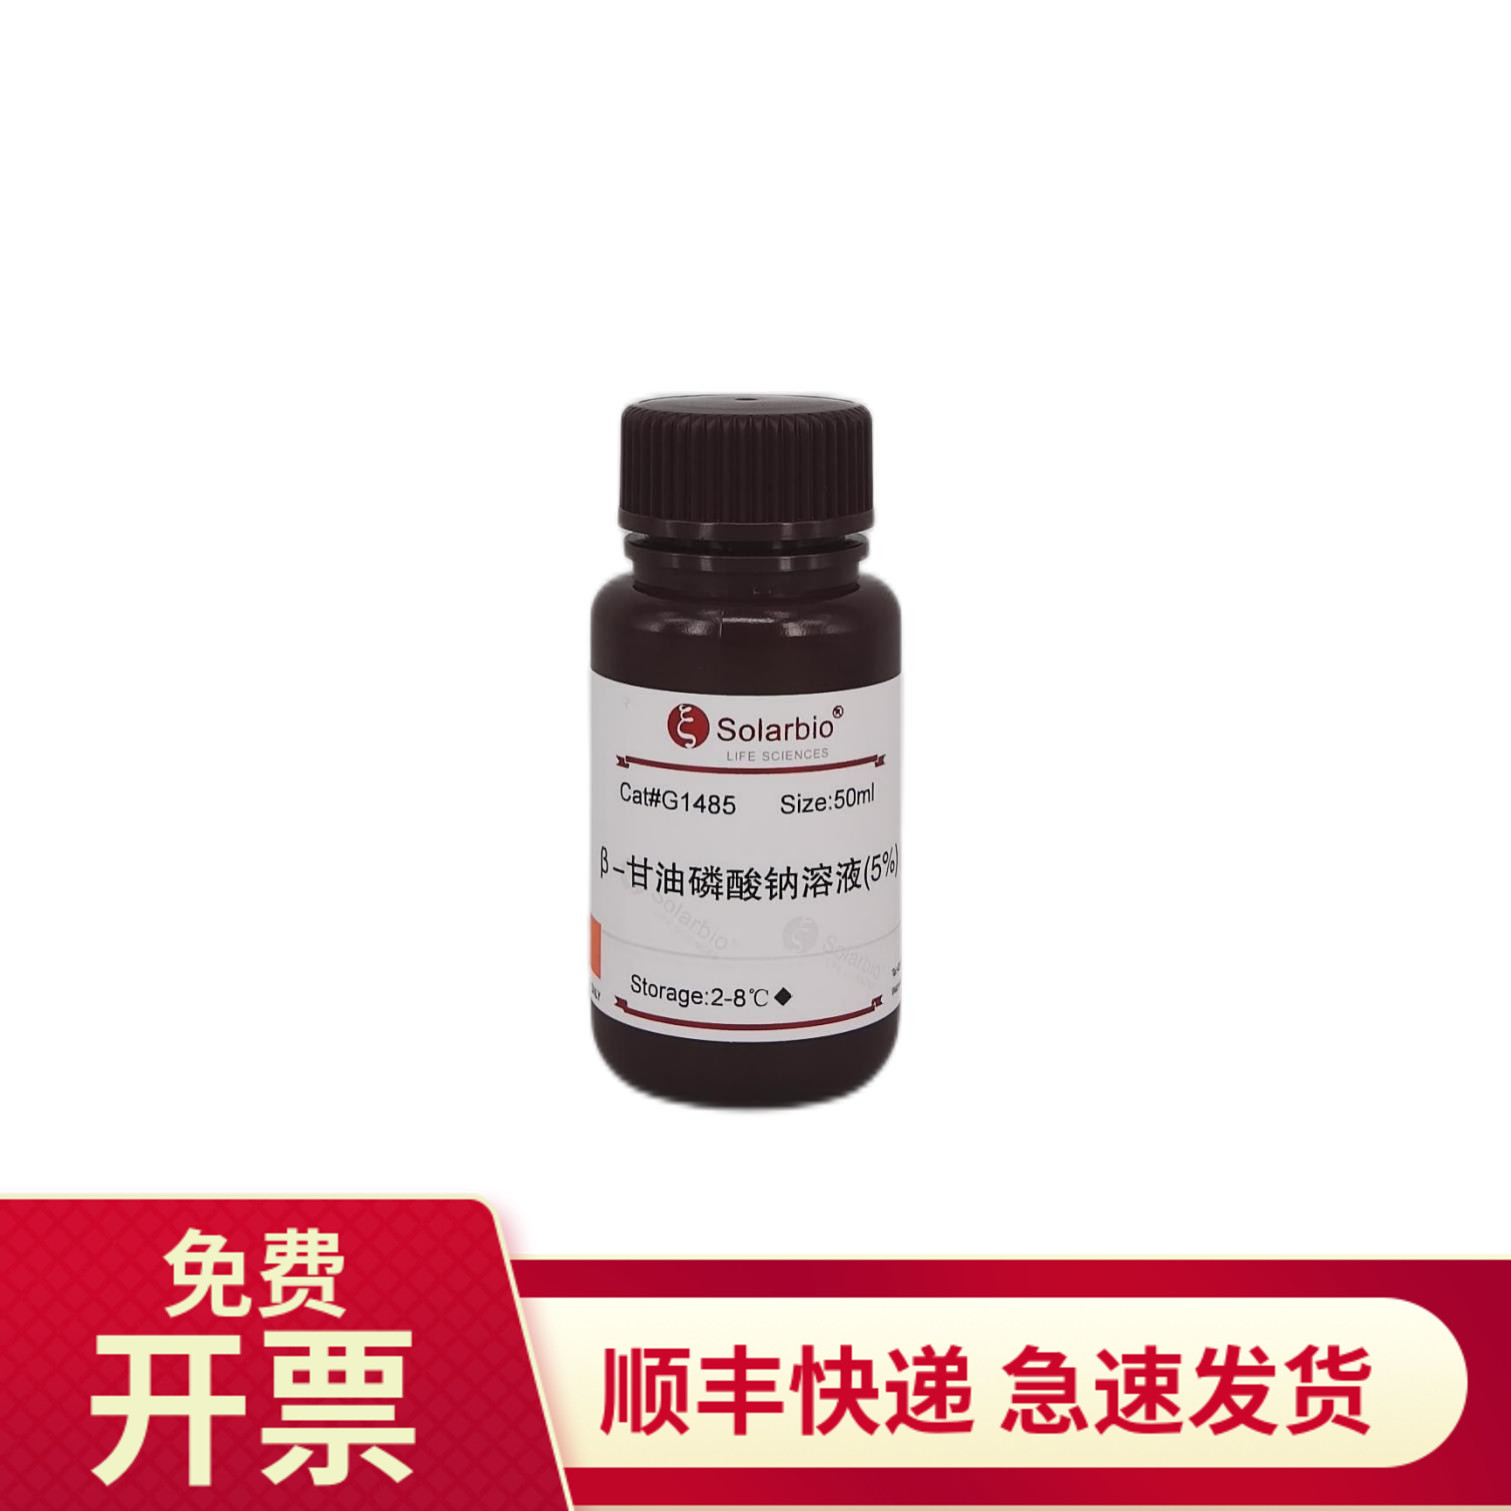 β-甘油磷酸钠溶液(5%) 50ml G1485 索莱宝Solarbio 染色试剂